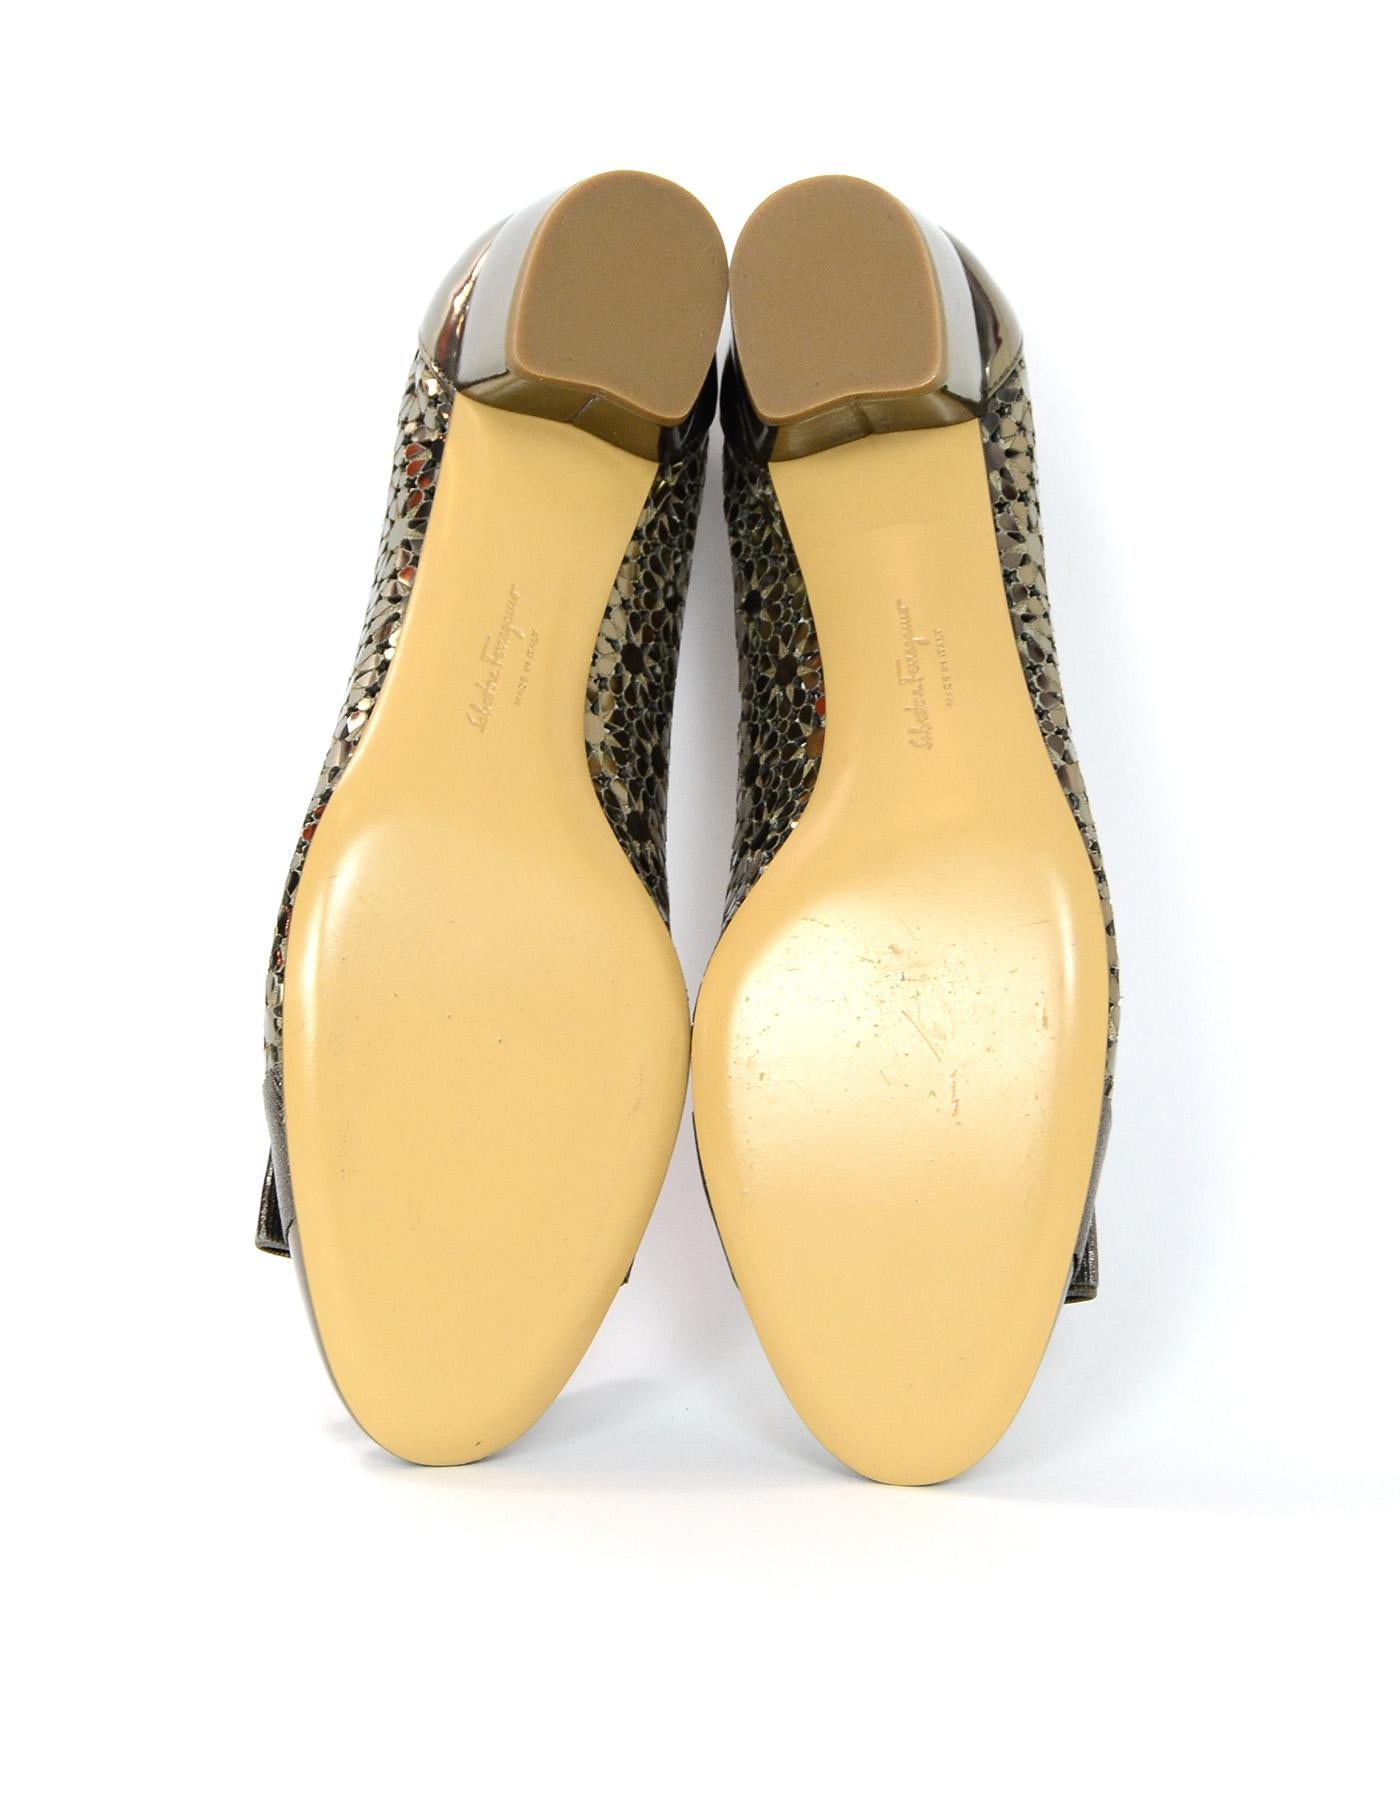 Salvatore Ferragamo Bronze Leather Laser Cut Out Side Cap Toe Shoes W/ Bow Sz 9C 1